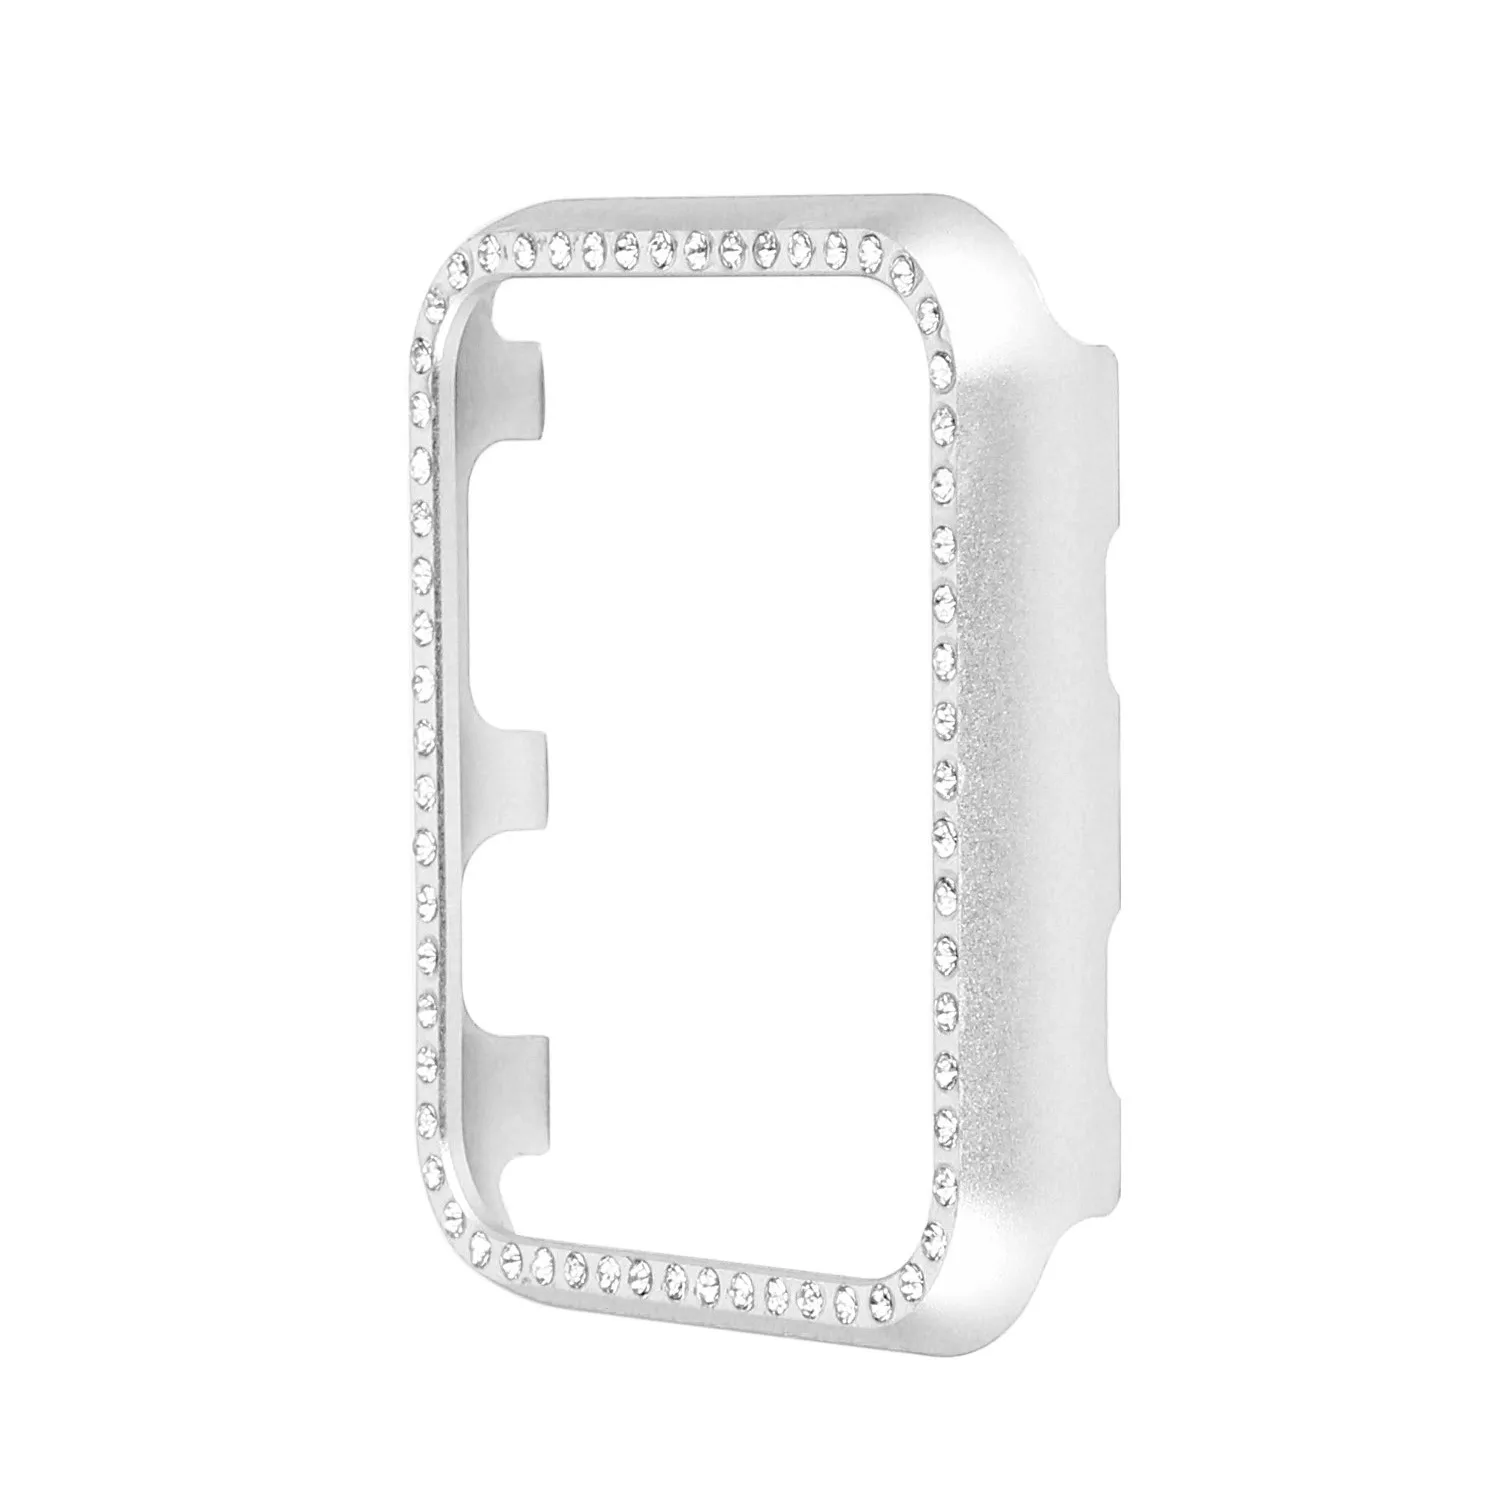 DAHASE Алмазная Алюминевая металлическая крышка для Apple чехол для часов серии 3 серии 2 серии 1 38 мм 42 мм чехол для iWatch Защитная крышка полосы - Цвет ремешка: Серебристый